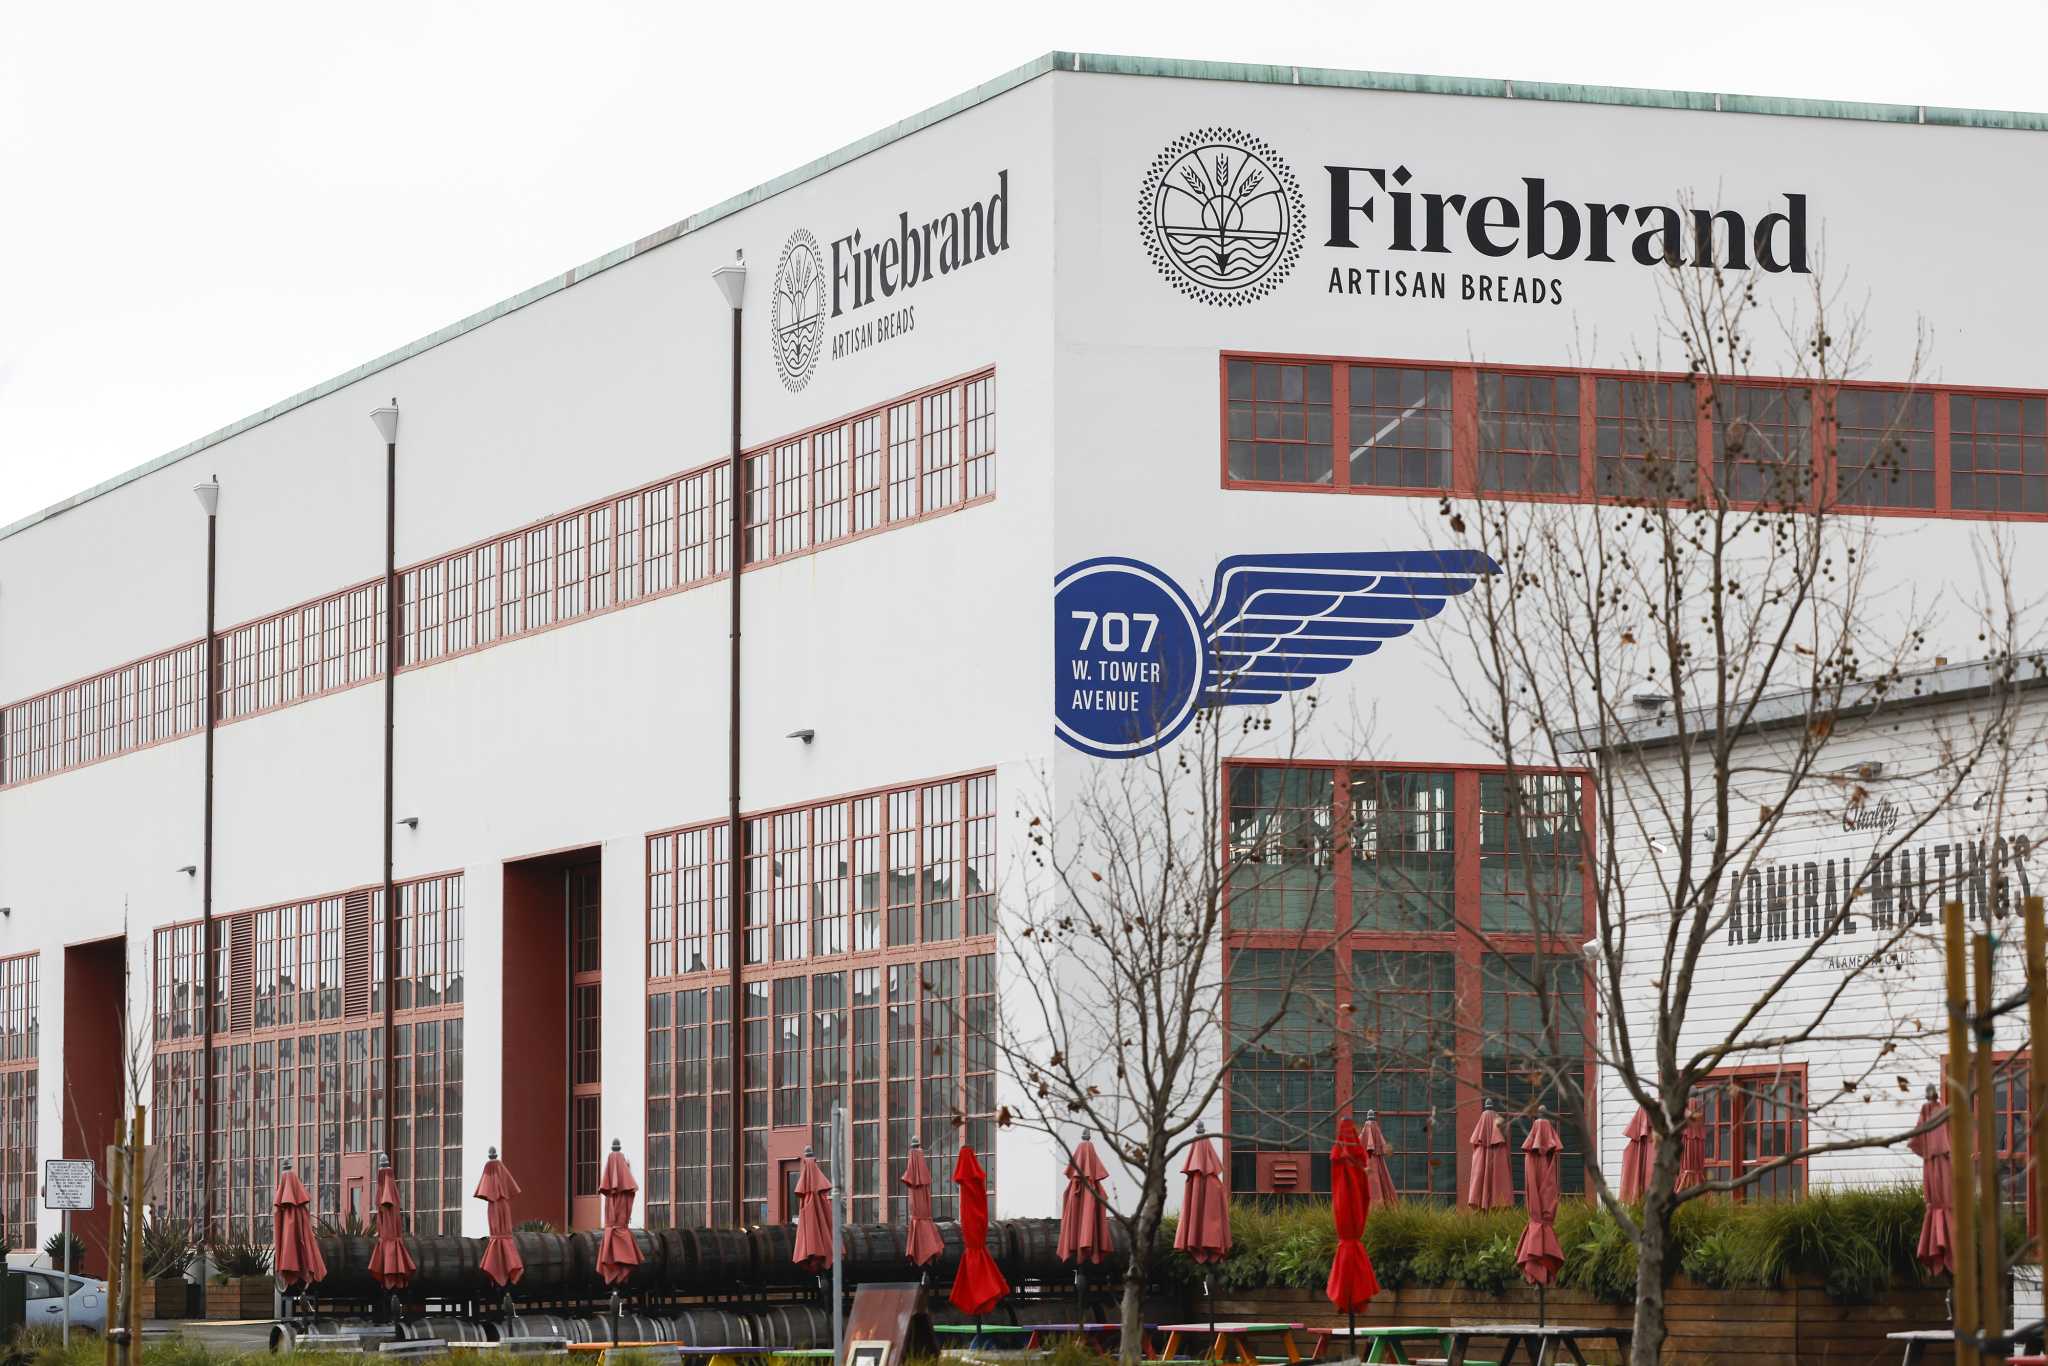 火热的湾区面包店Firebrand面临诉讼和债务问题